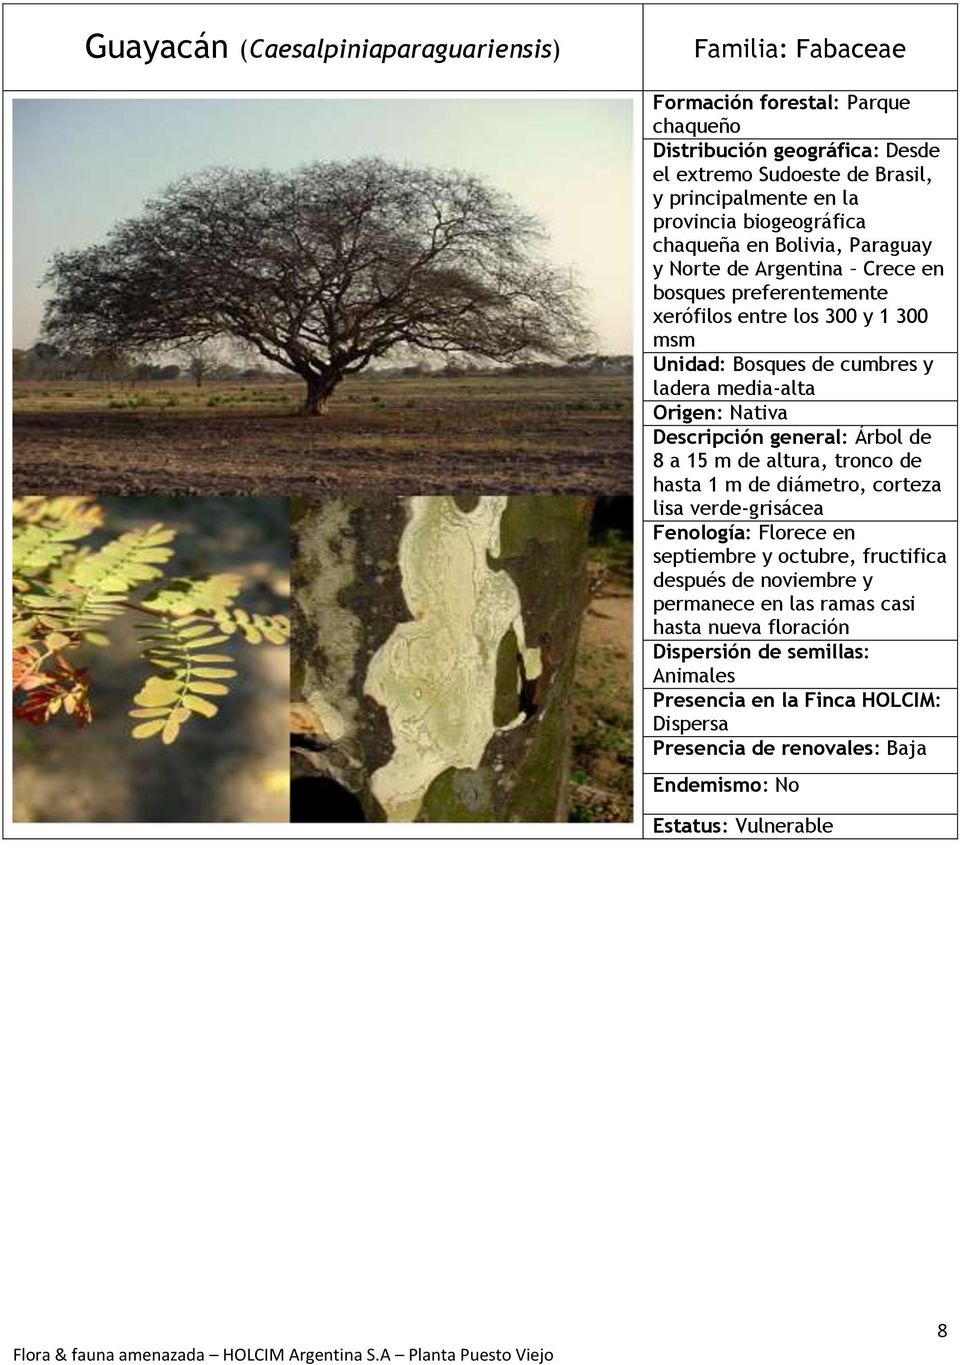 y ladera media-alta Descripción general: Árbol de 8 a 15 m de altura, tronco de hasta 1 m de diámetro, corteza lisa verde-grisácea Fenología: Florece en